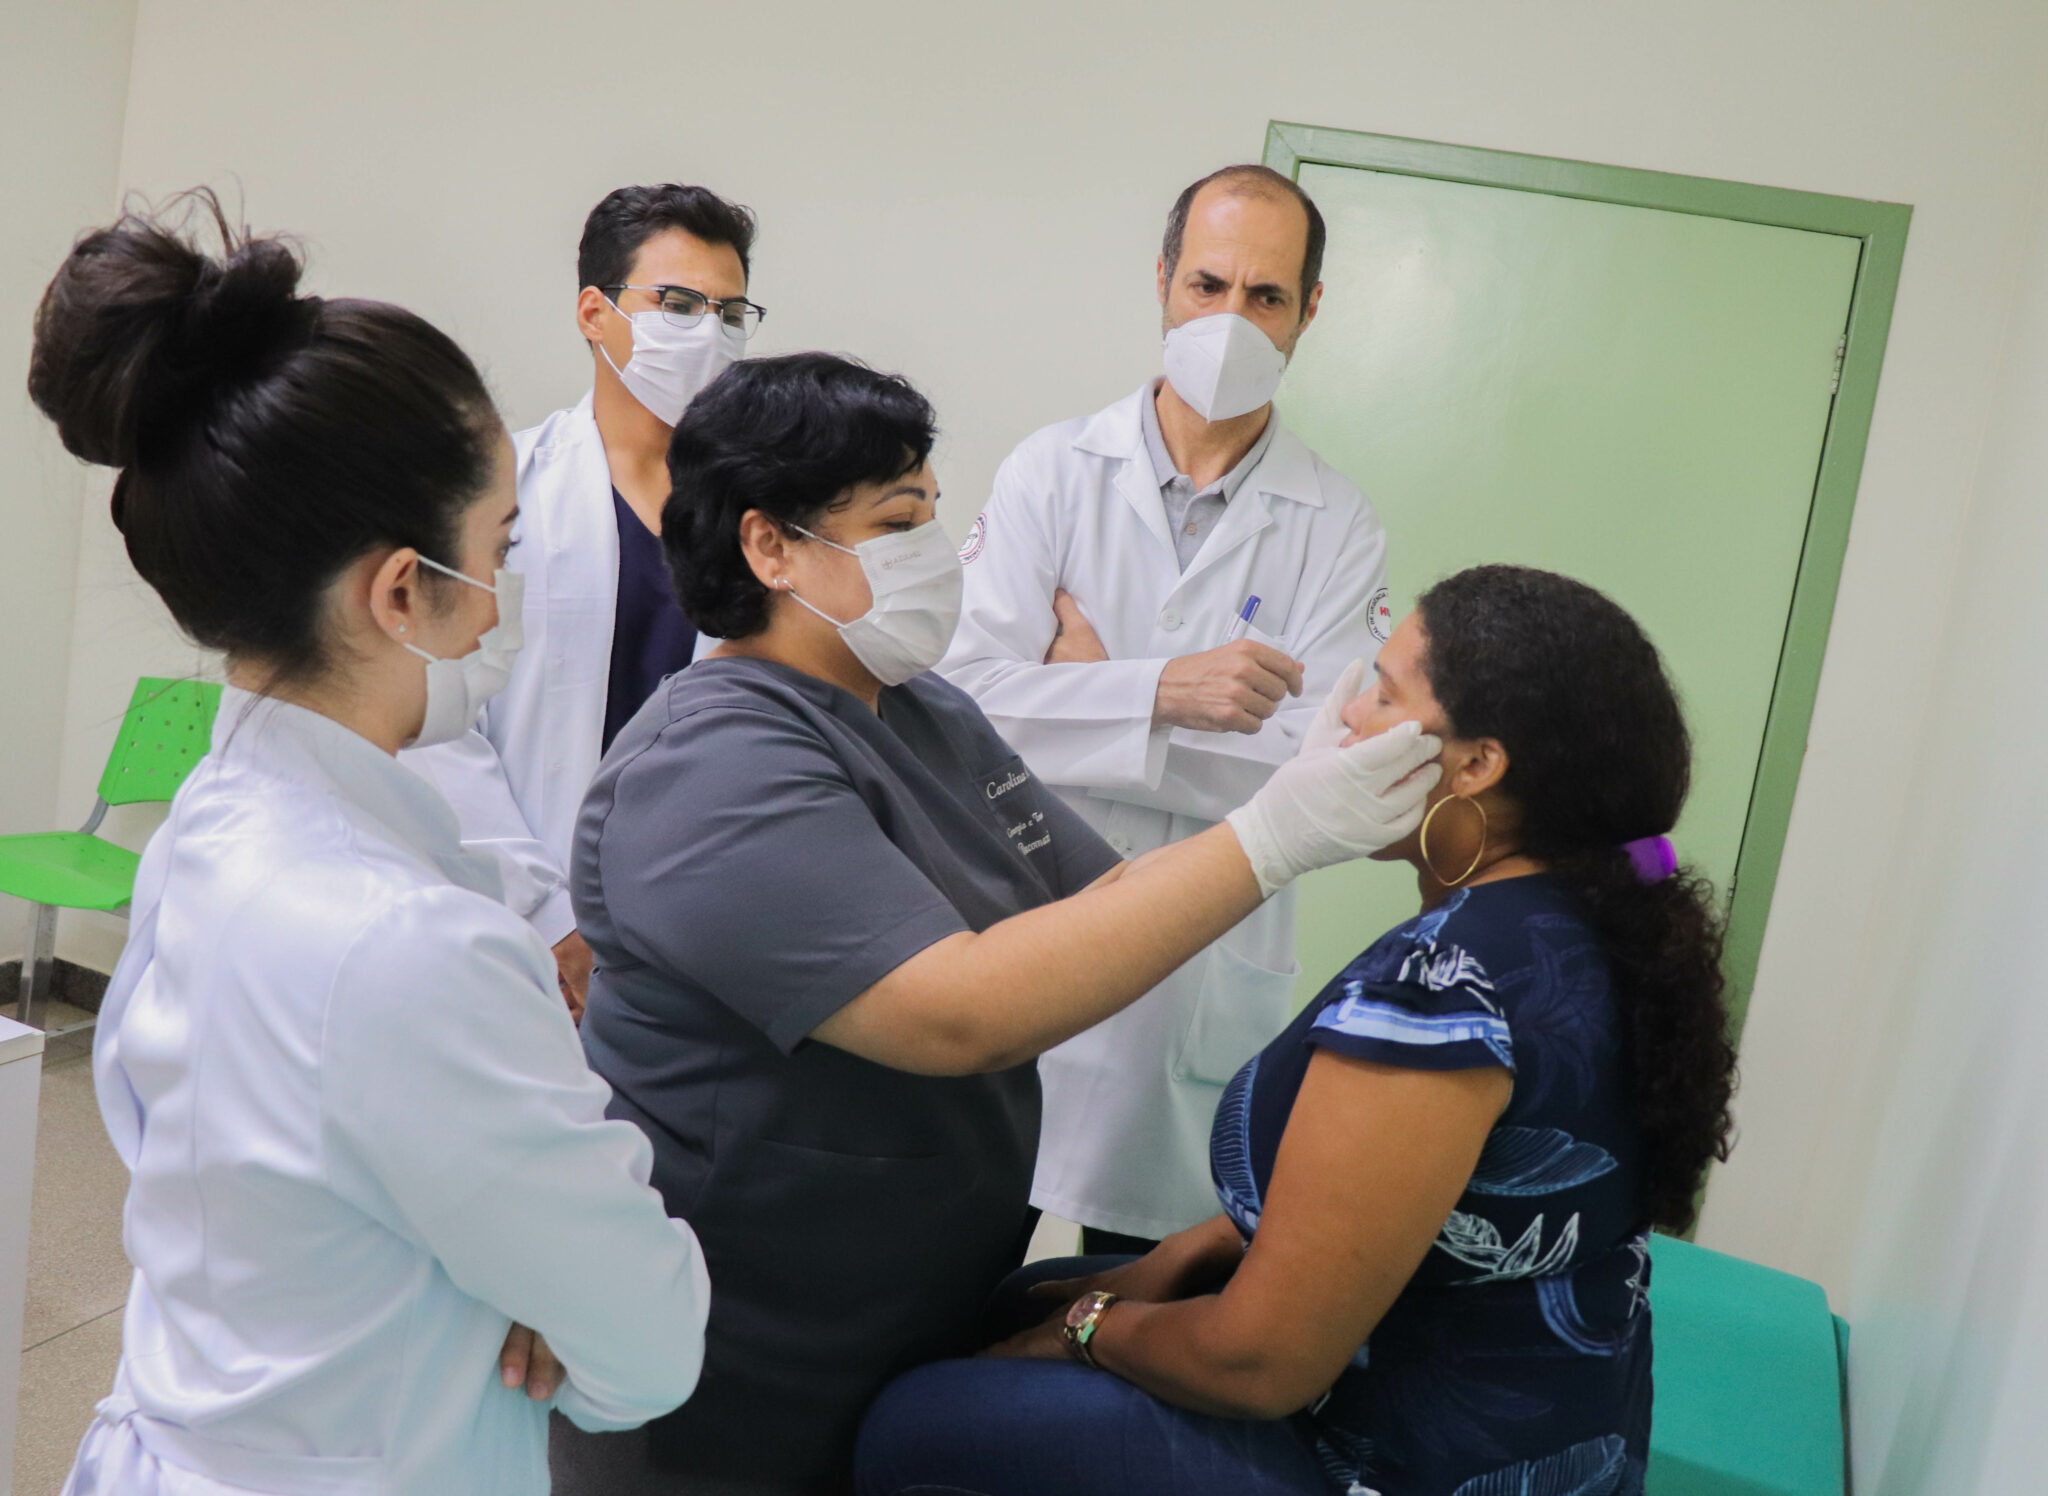 Serviços de cirurgia e traumatologia facial da Fundhacre promovem qualidade de vida